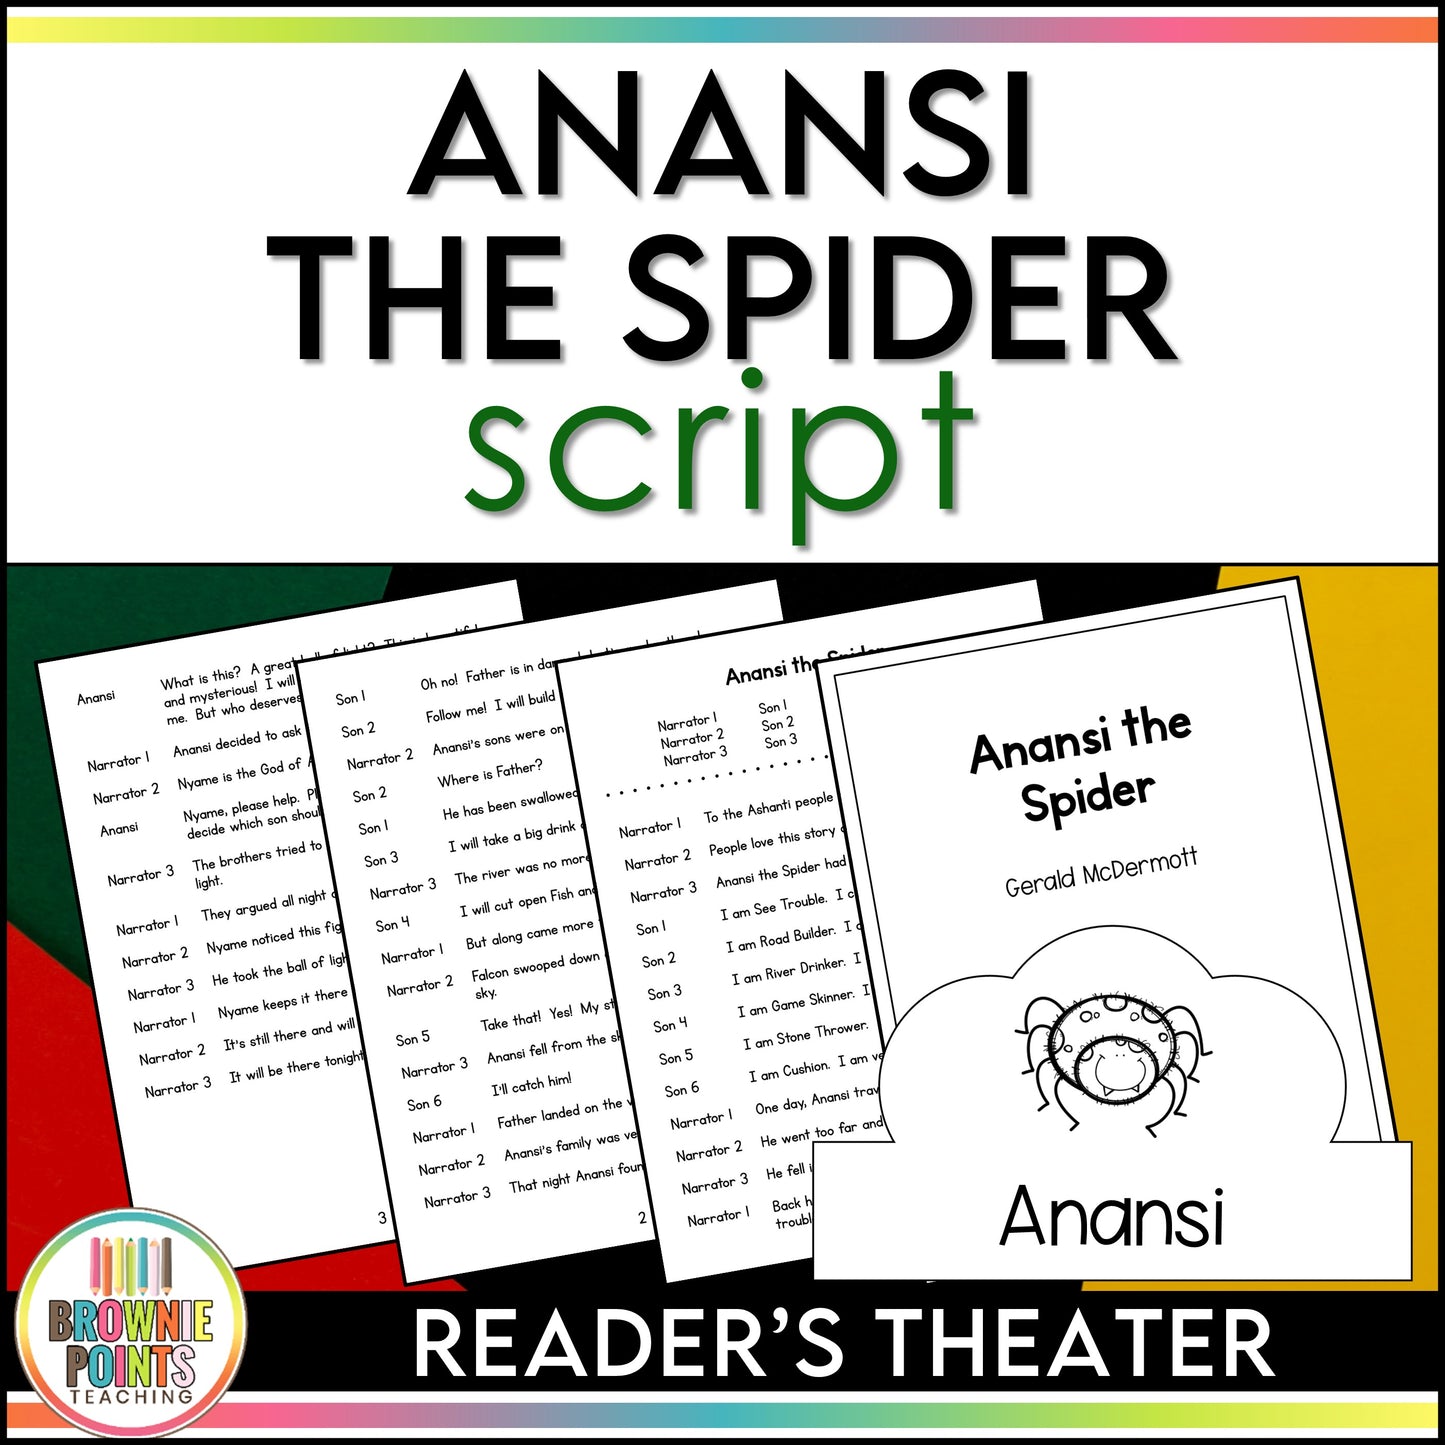 Anansi the Spider Reader's Theater Script